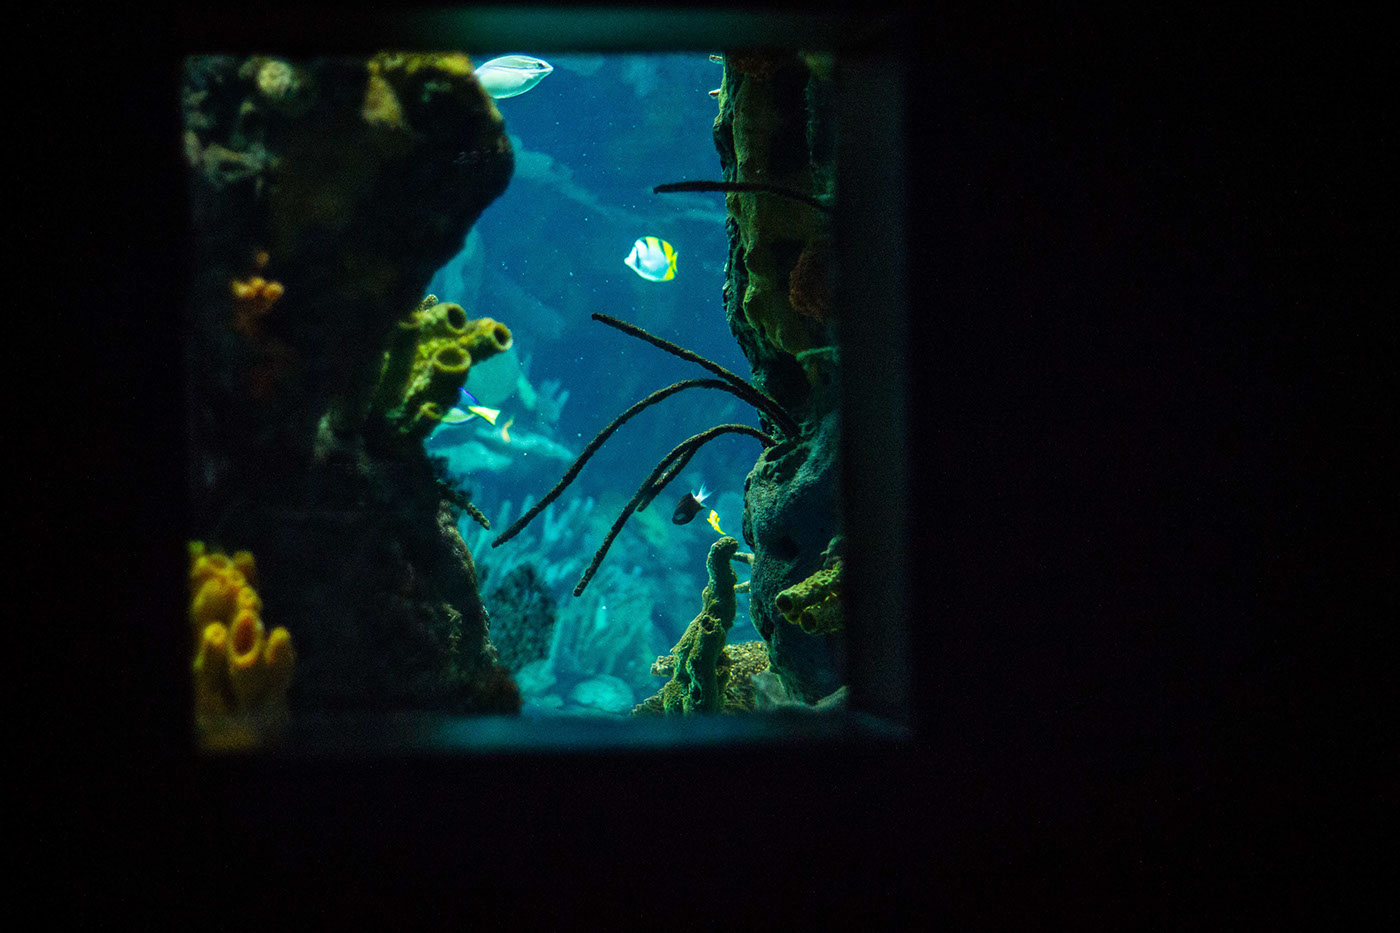 oceanario underwater forest takashi amano